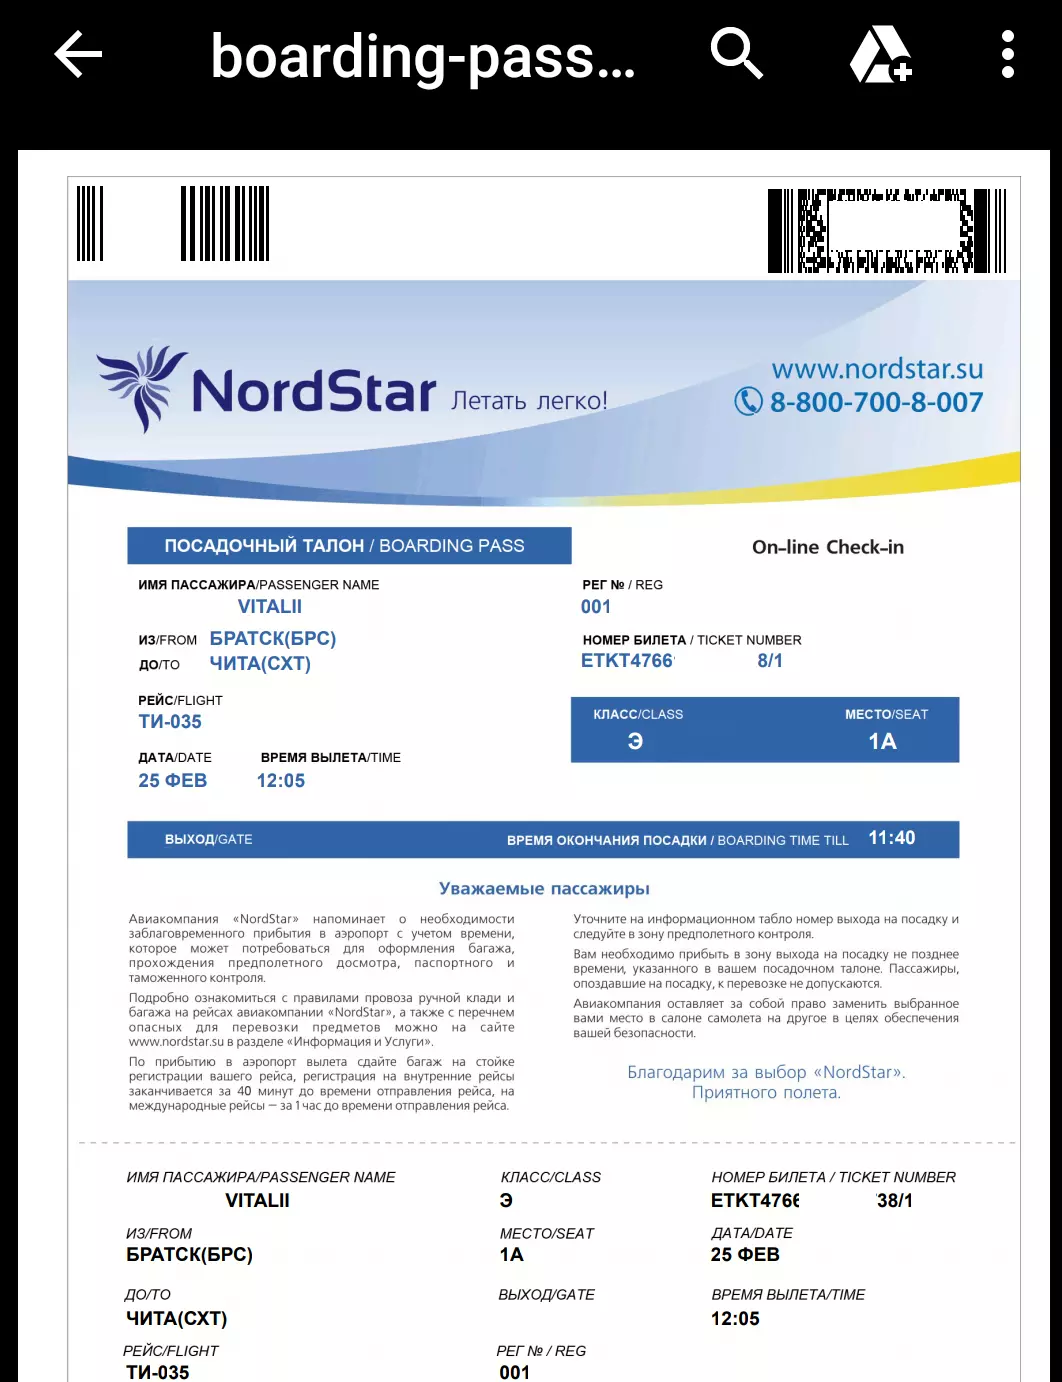 Нордстар (nordstar): вход в личный кабинет и онлайн регистрация